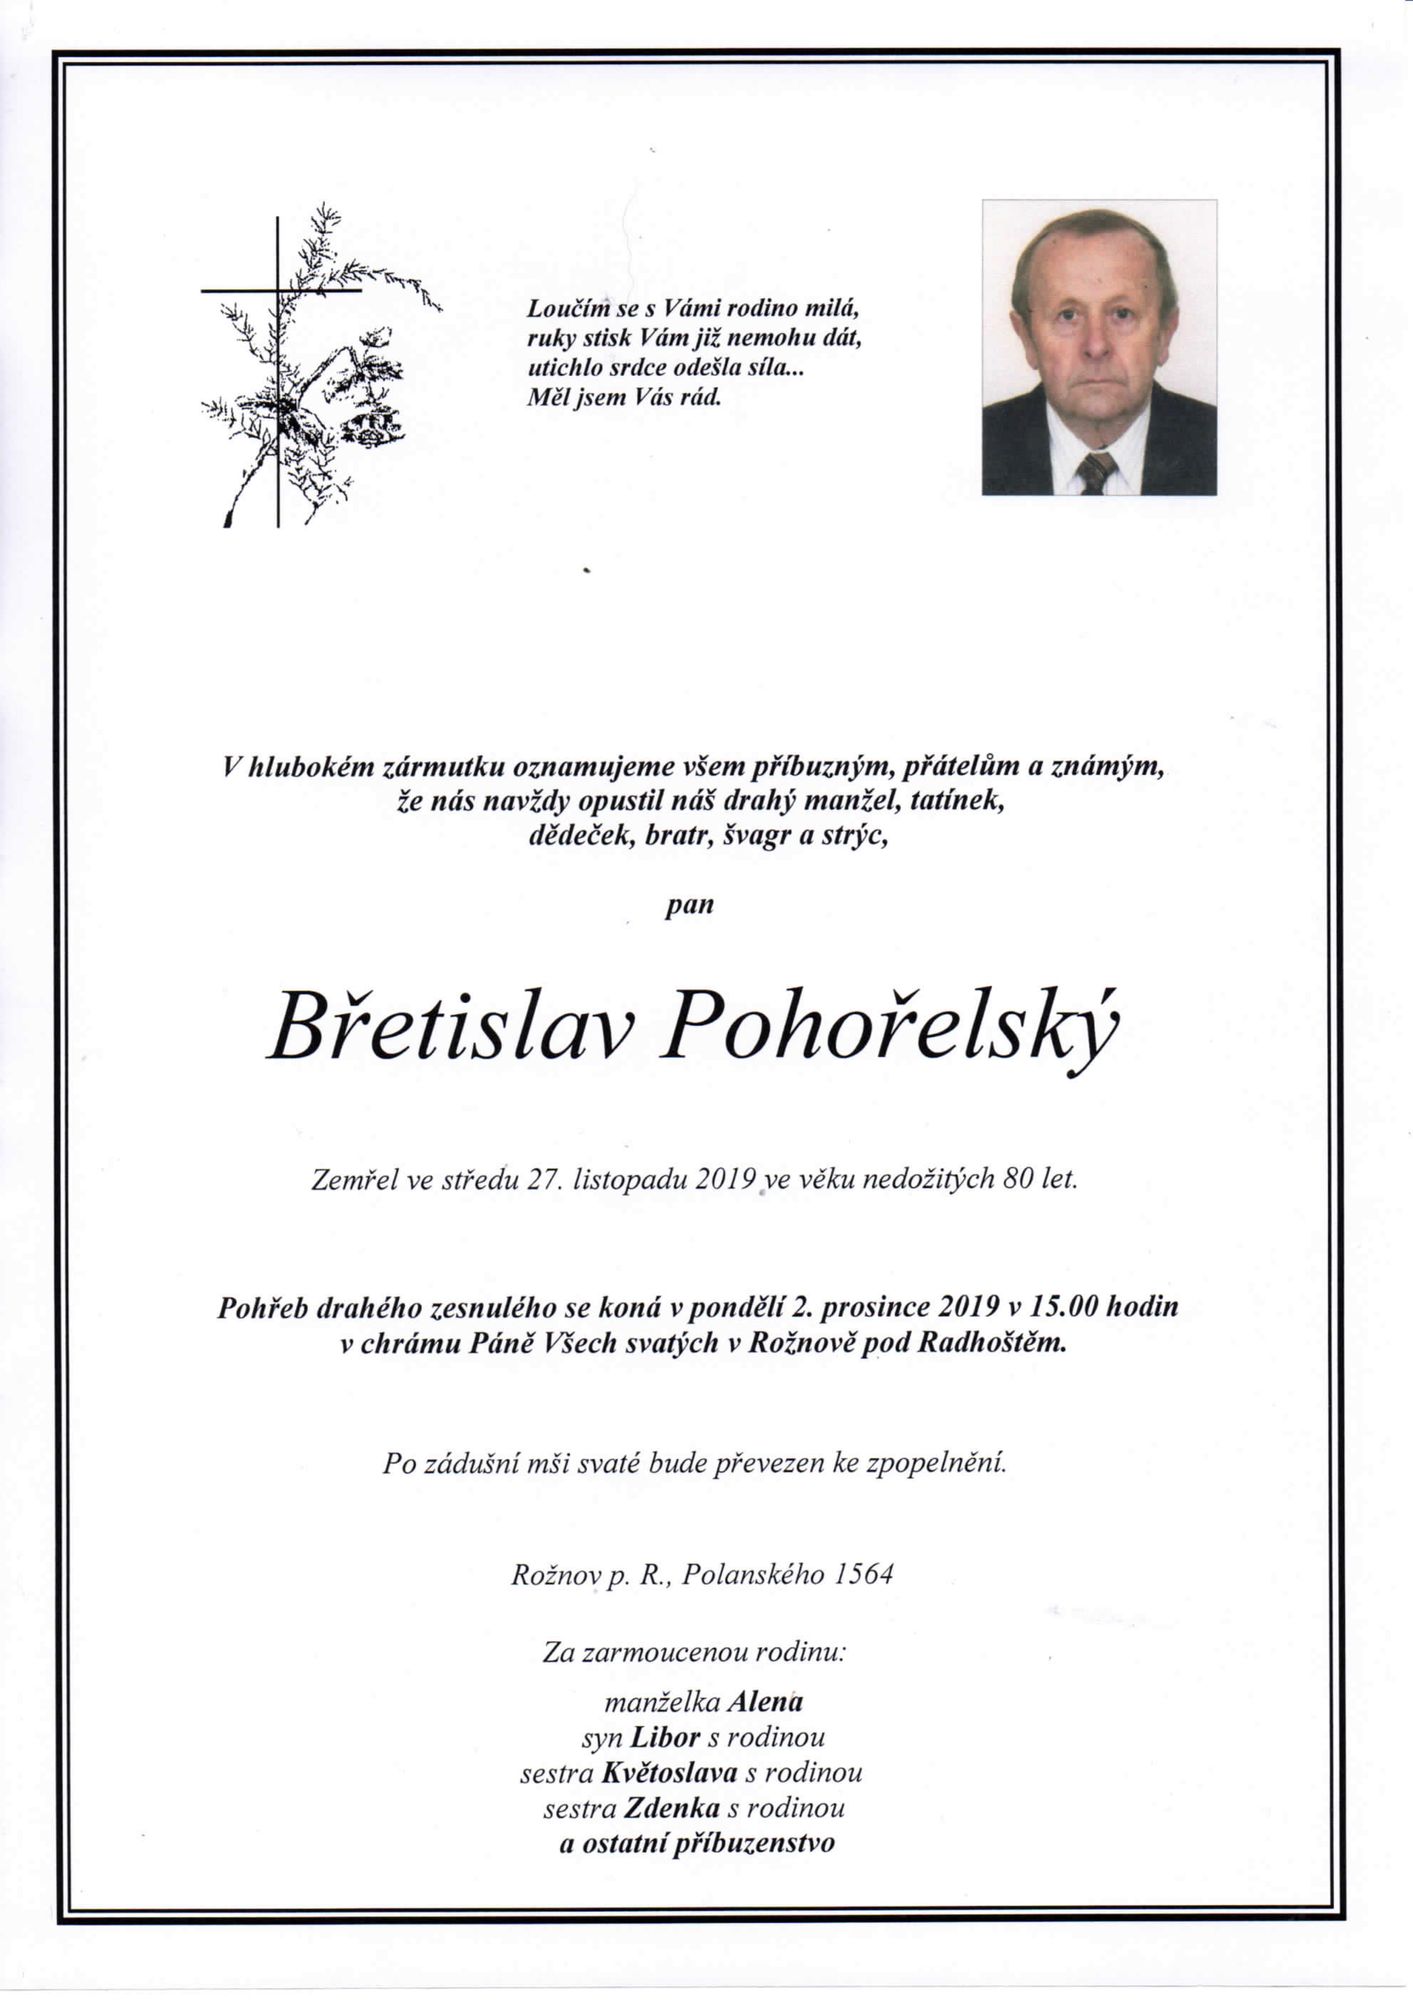 Břetislav Pohořelský